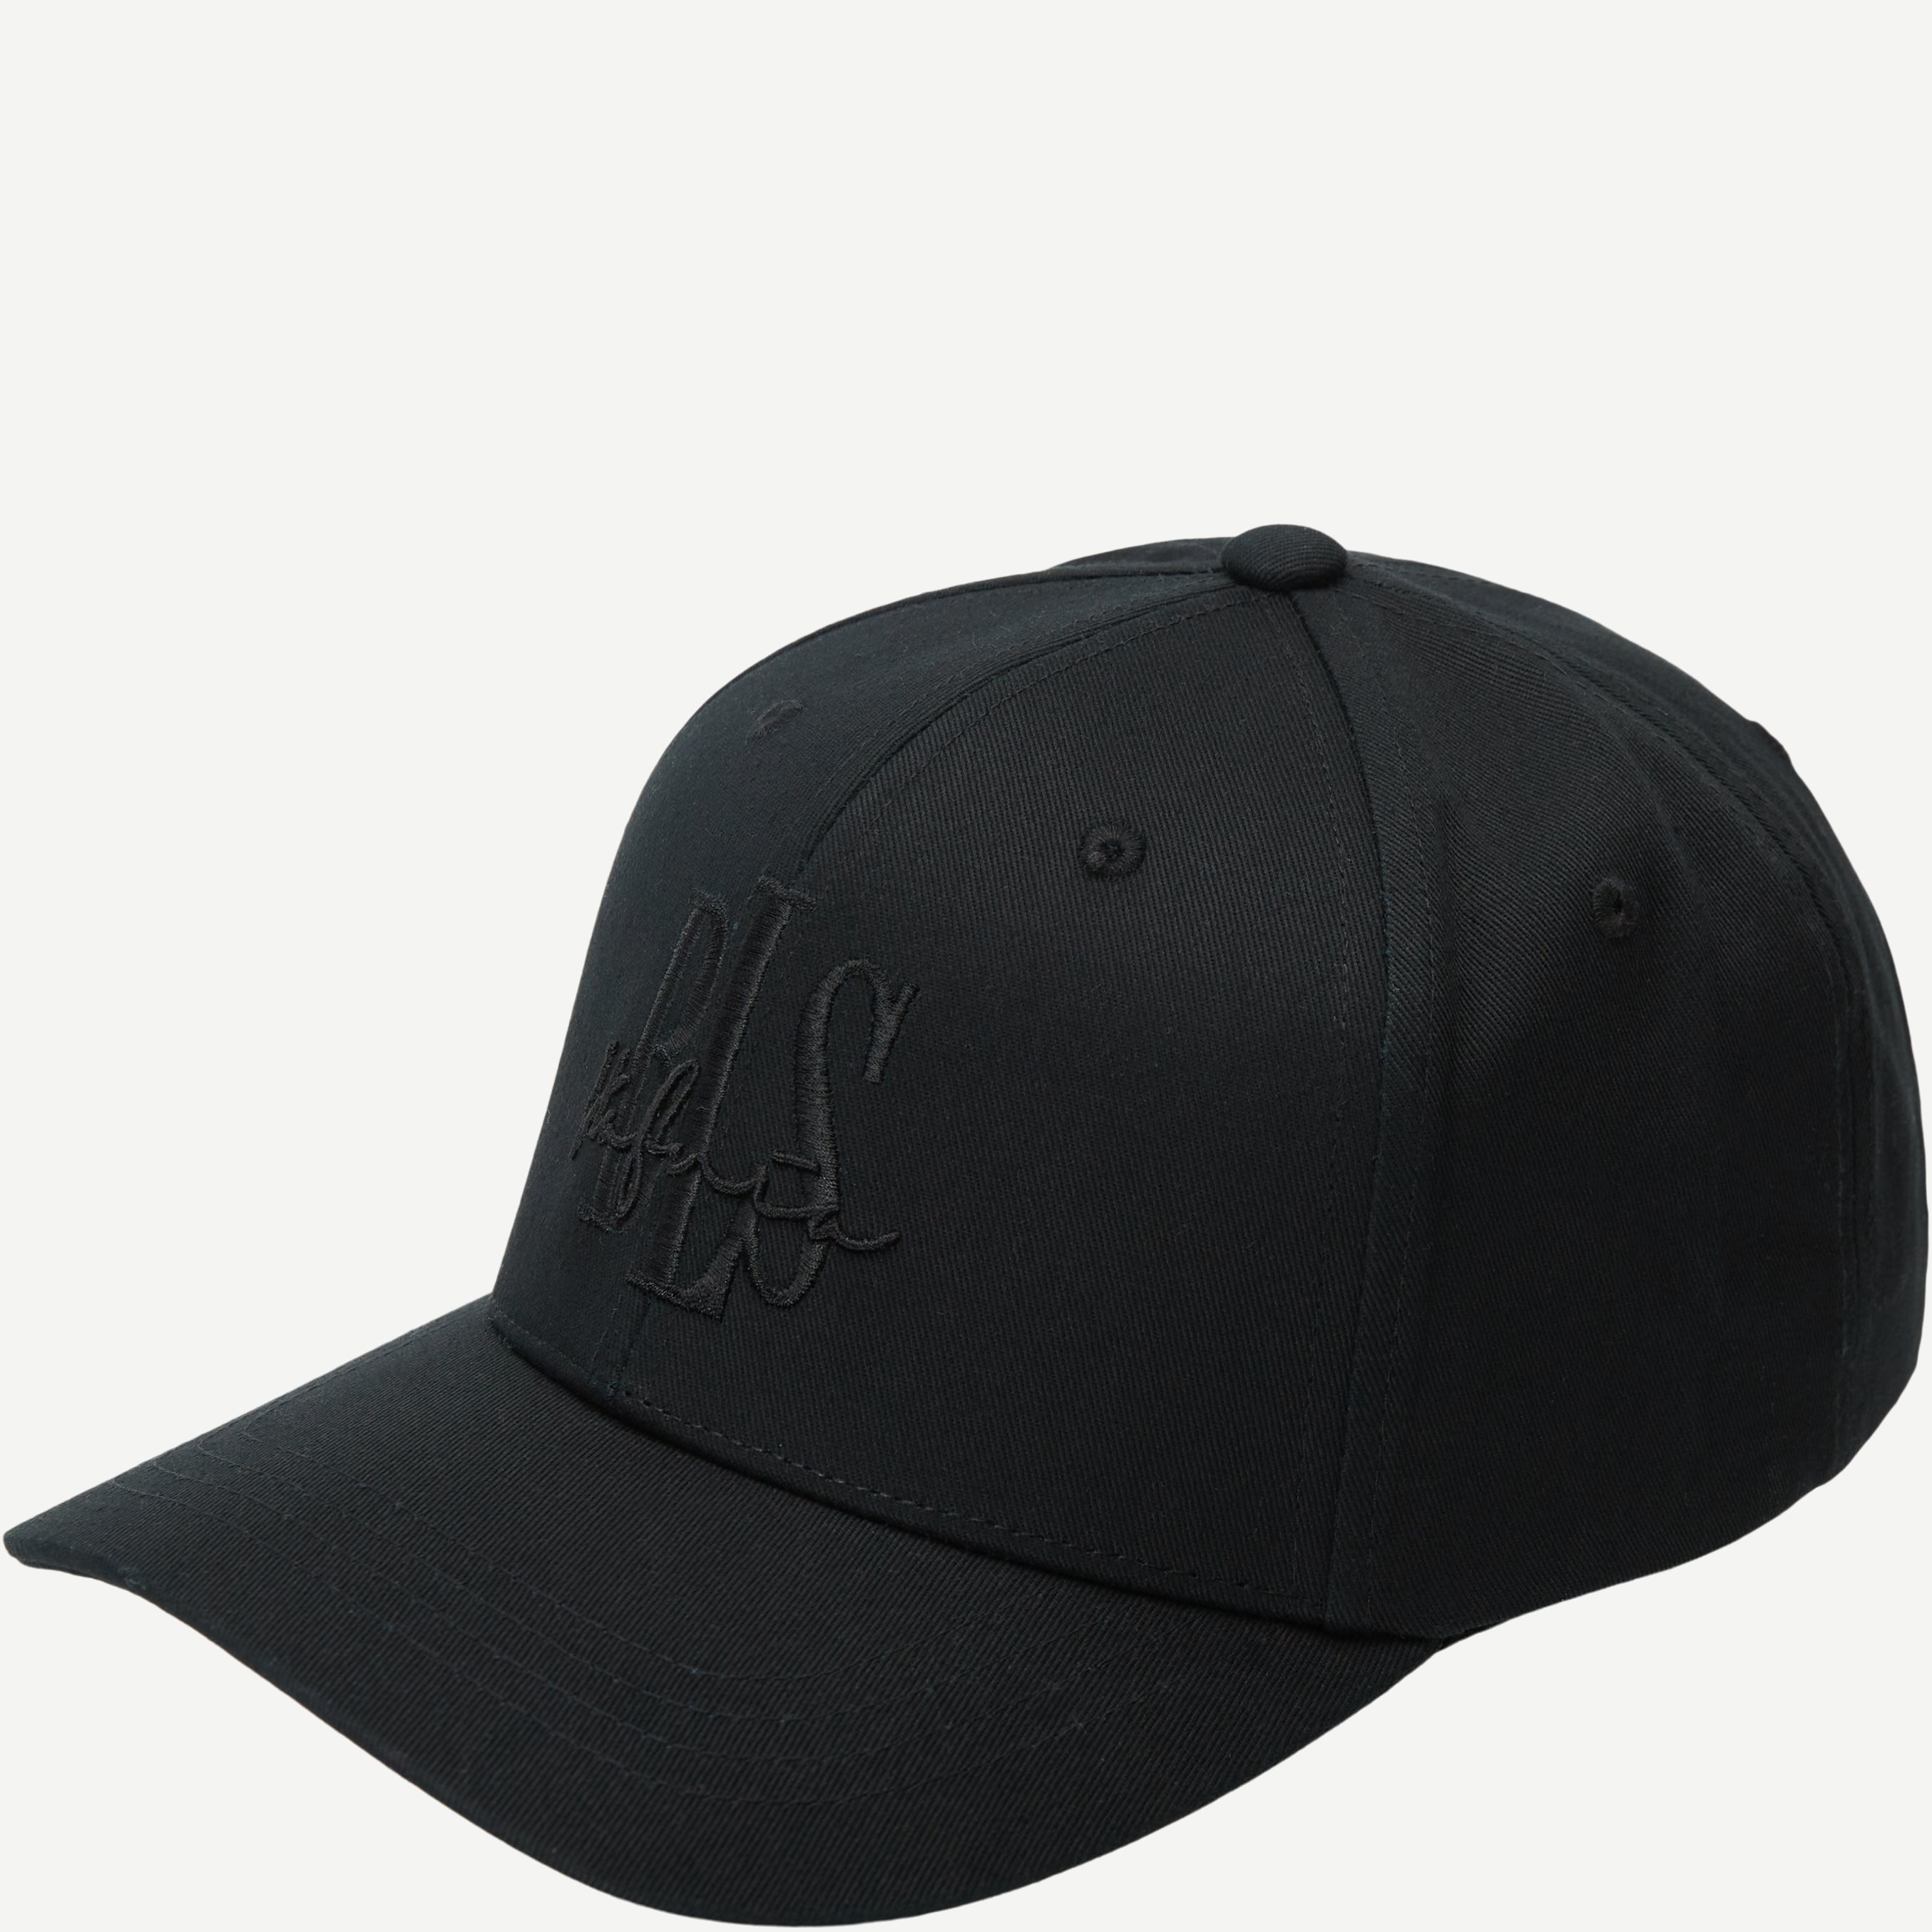 BLS Caps SIGNATURE CAP Sort